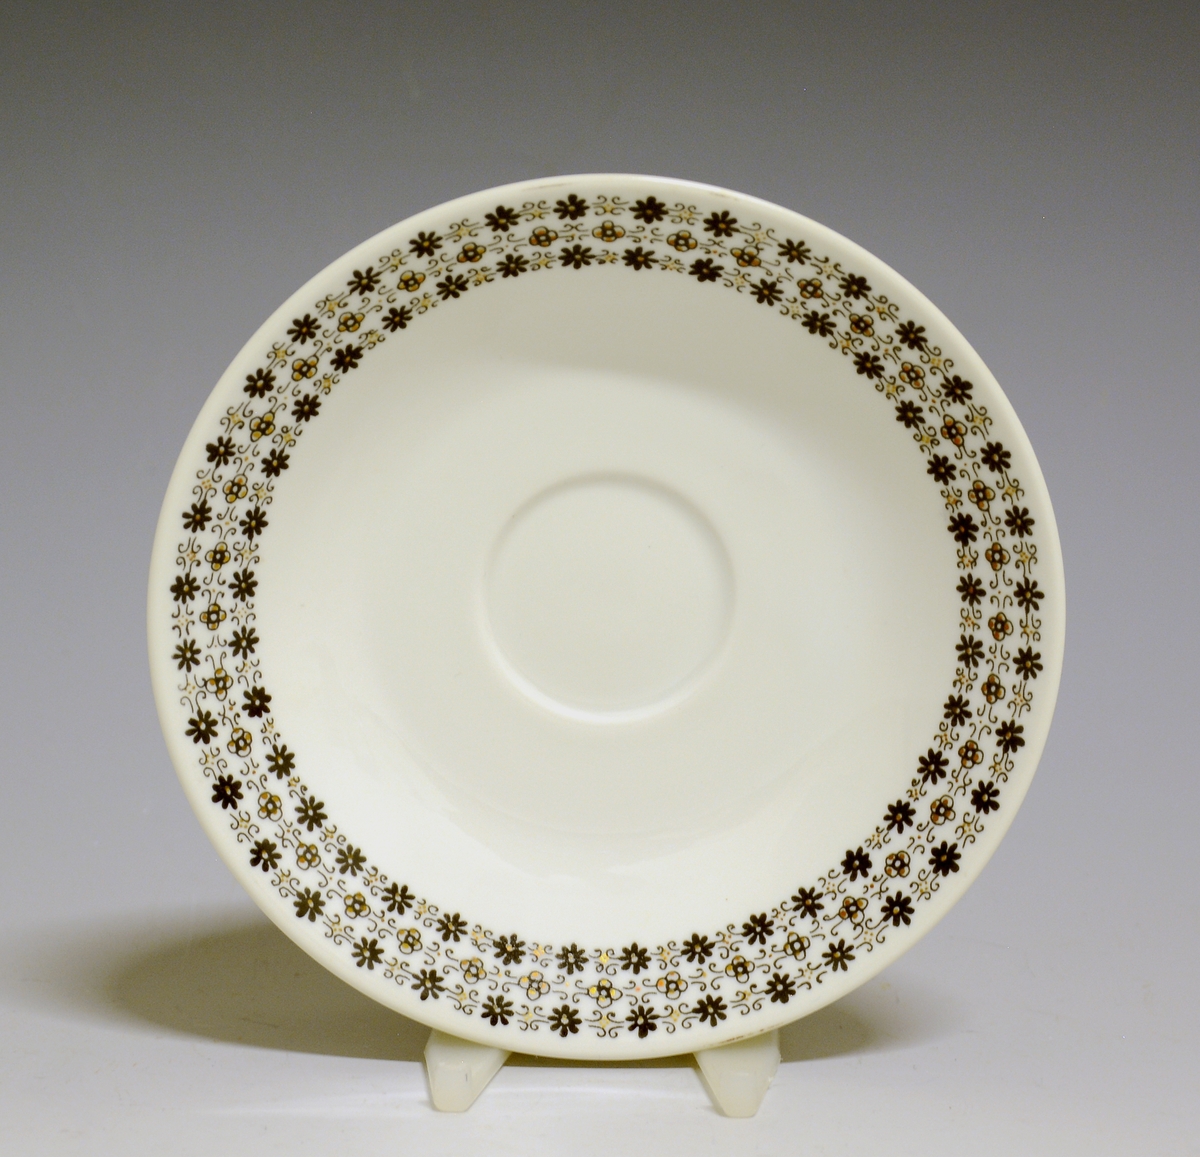 Kaffeskål av porselen med hvit glasur og bord med småblomstret trykkdekor i sort og gull langs kanten.
Modell: Petita (eller variant av)
